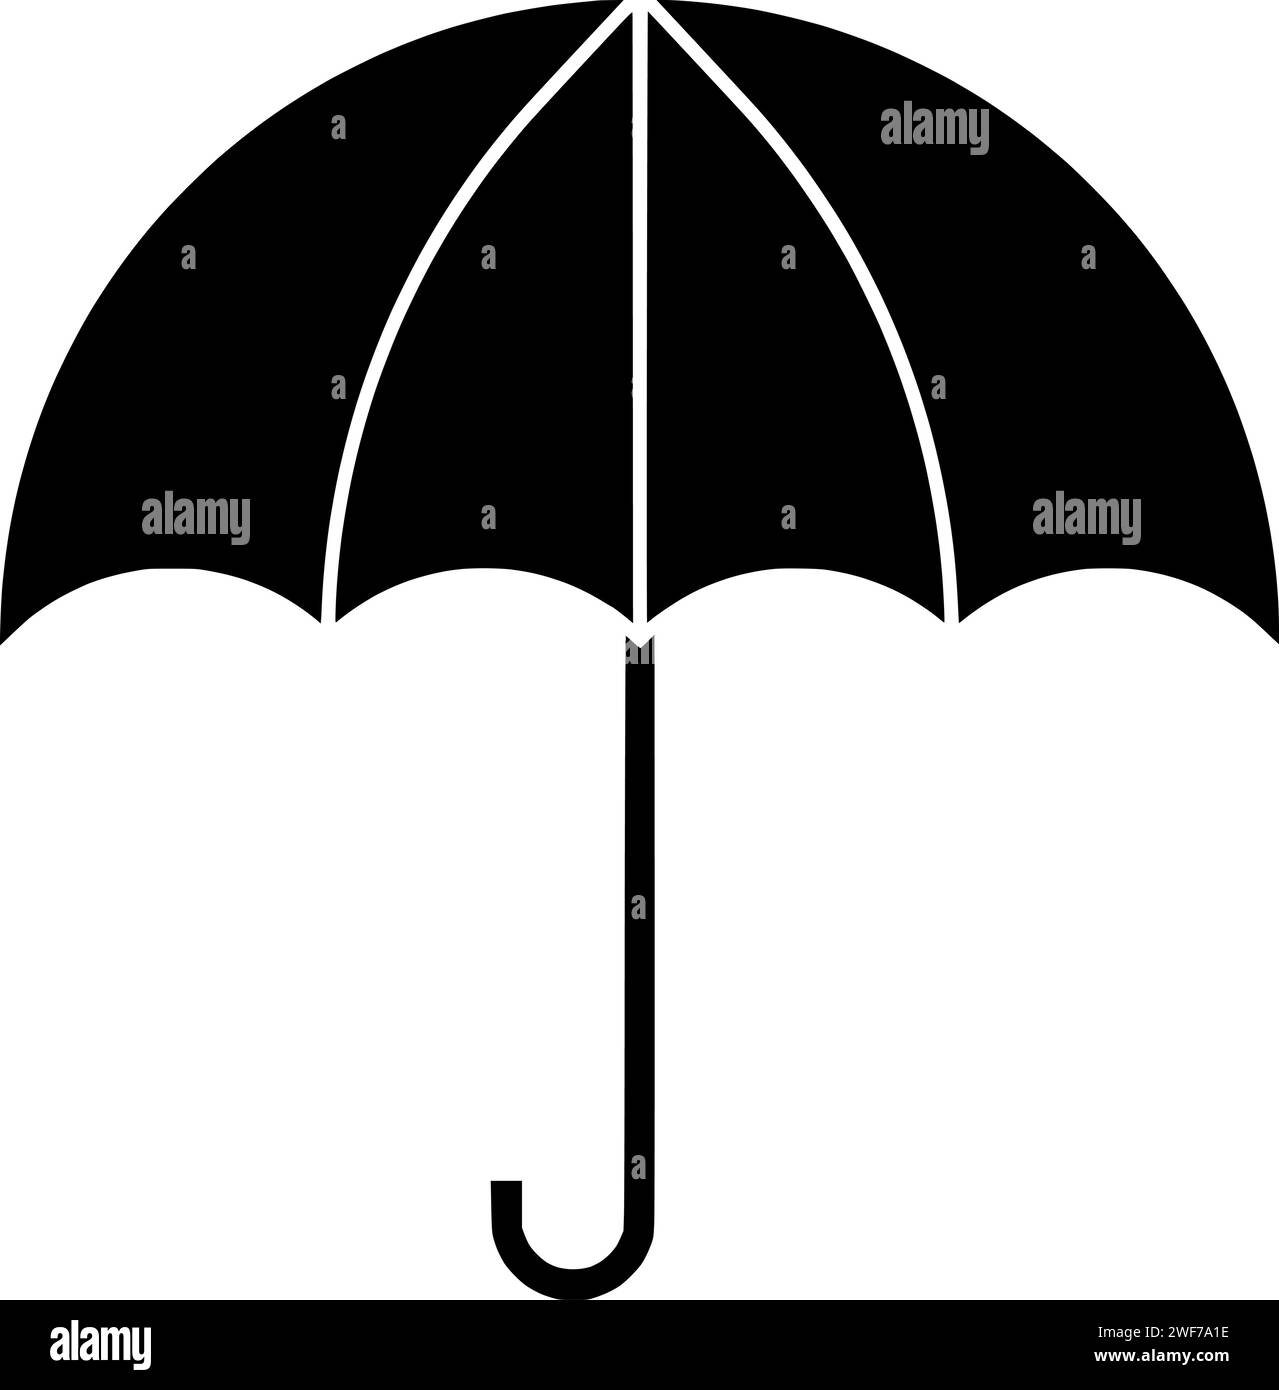 Regenschirm Illustration Schutz Silhouette Schirm Logo Saison-Icon Wetterkontur offener Regengriff Schutz Wasser Herbst Regenzubehör Meteorologie Form Sonnenschirm Trockenversicherung Stock Vektor